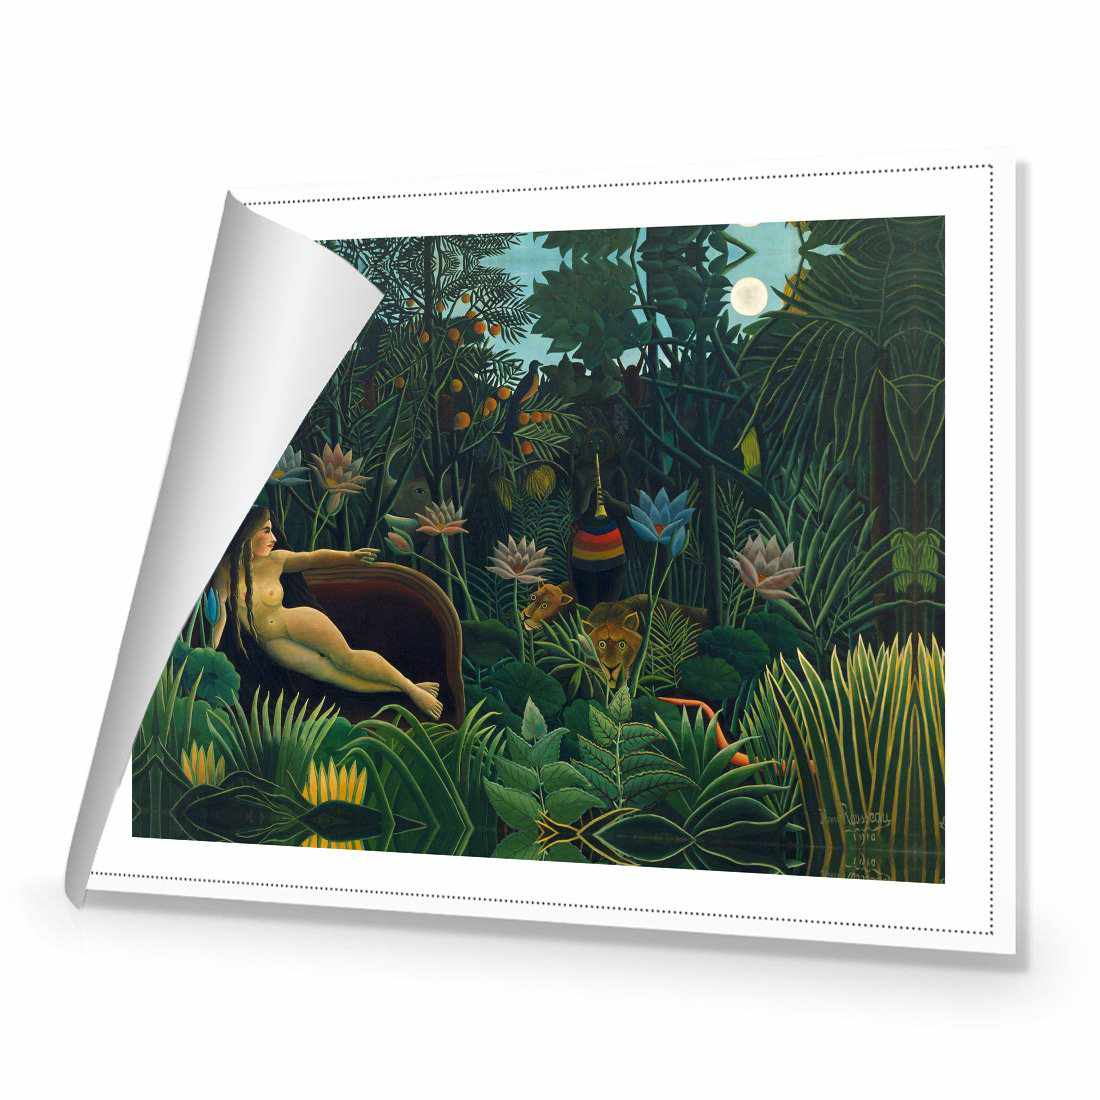 The Dream - Henri Rousseau Canvas Art-Canvas-Wall Art Designs-45x30cm-Rolled Canvas-Wall Art Designs